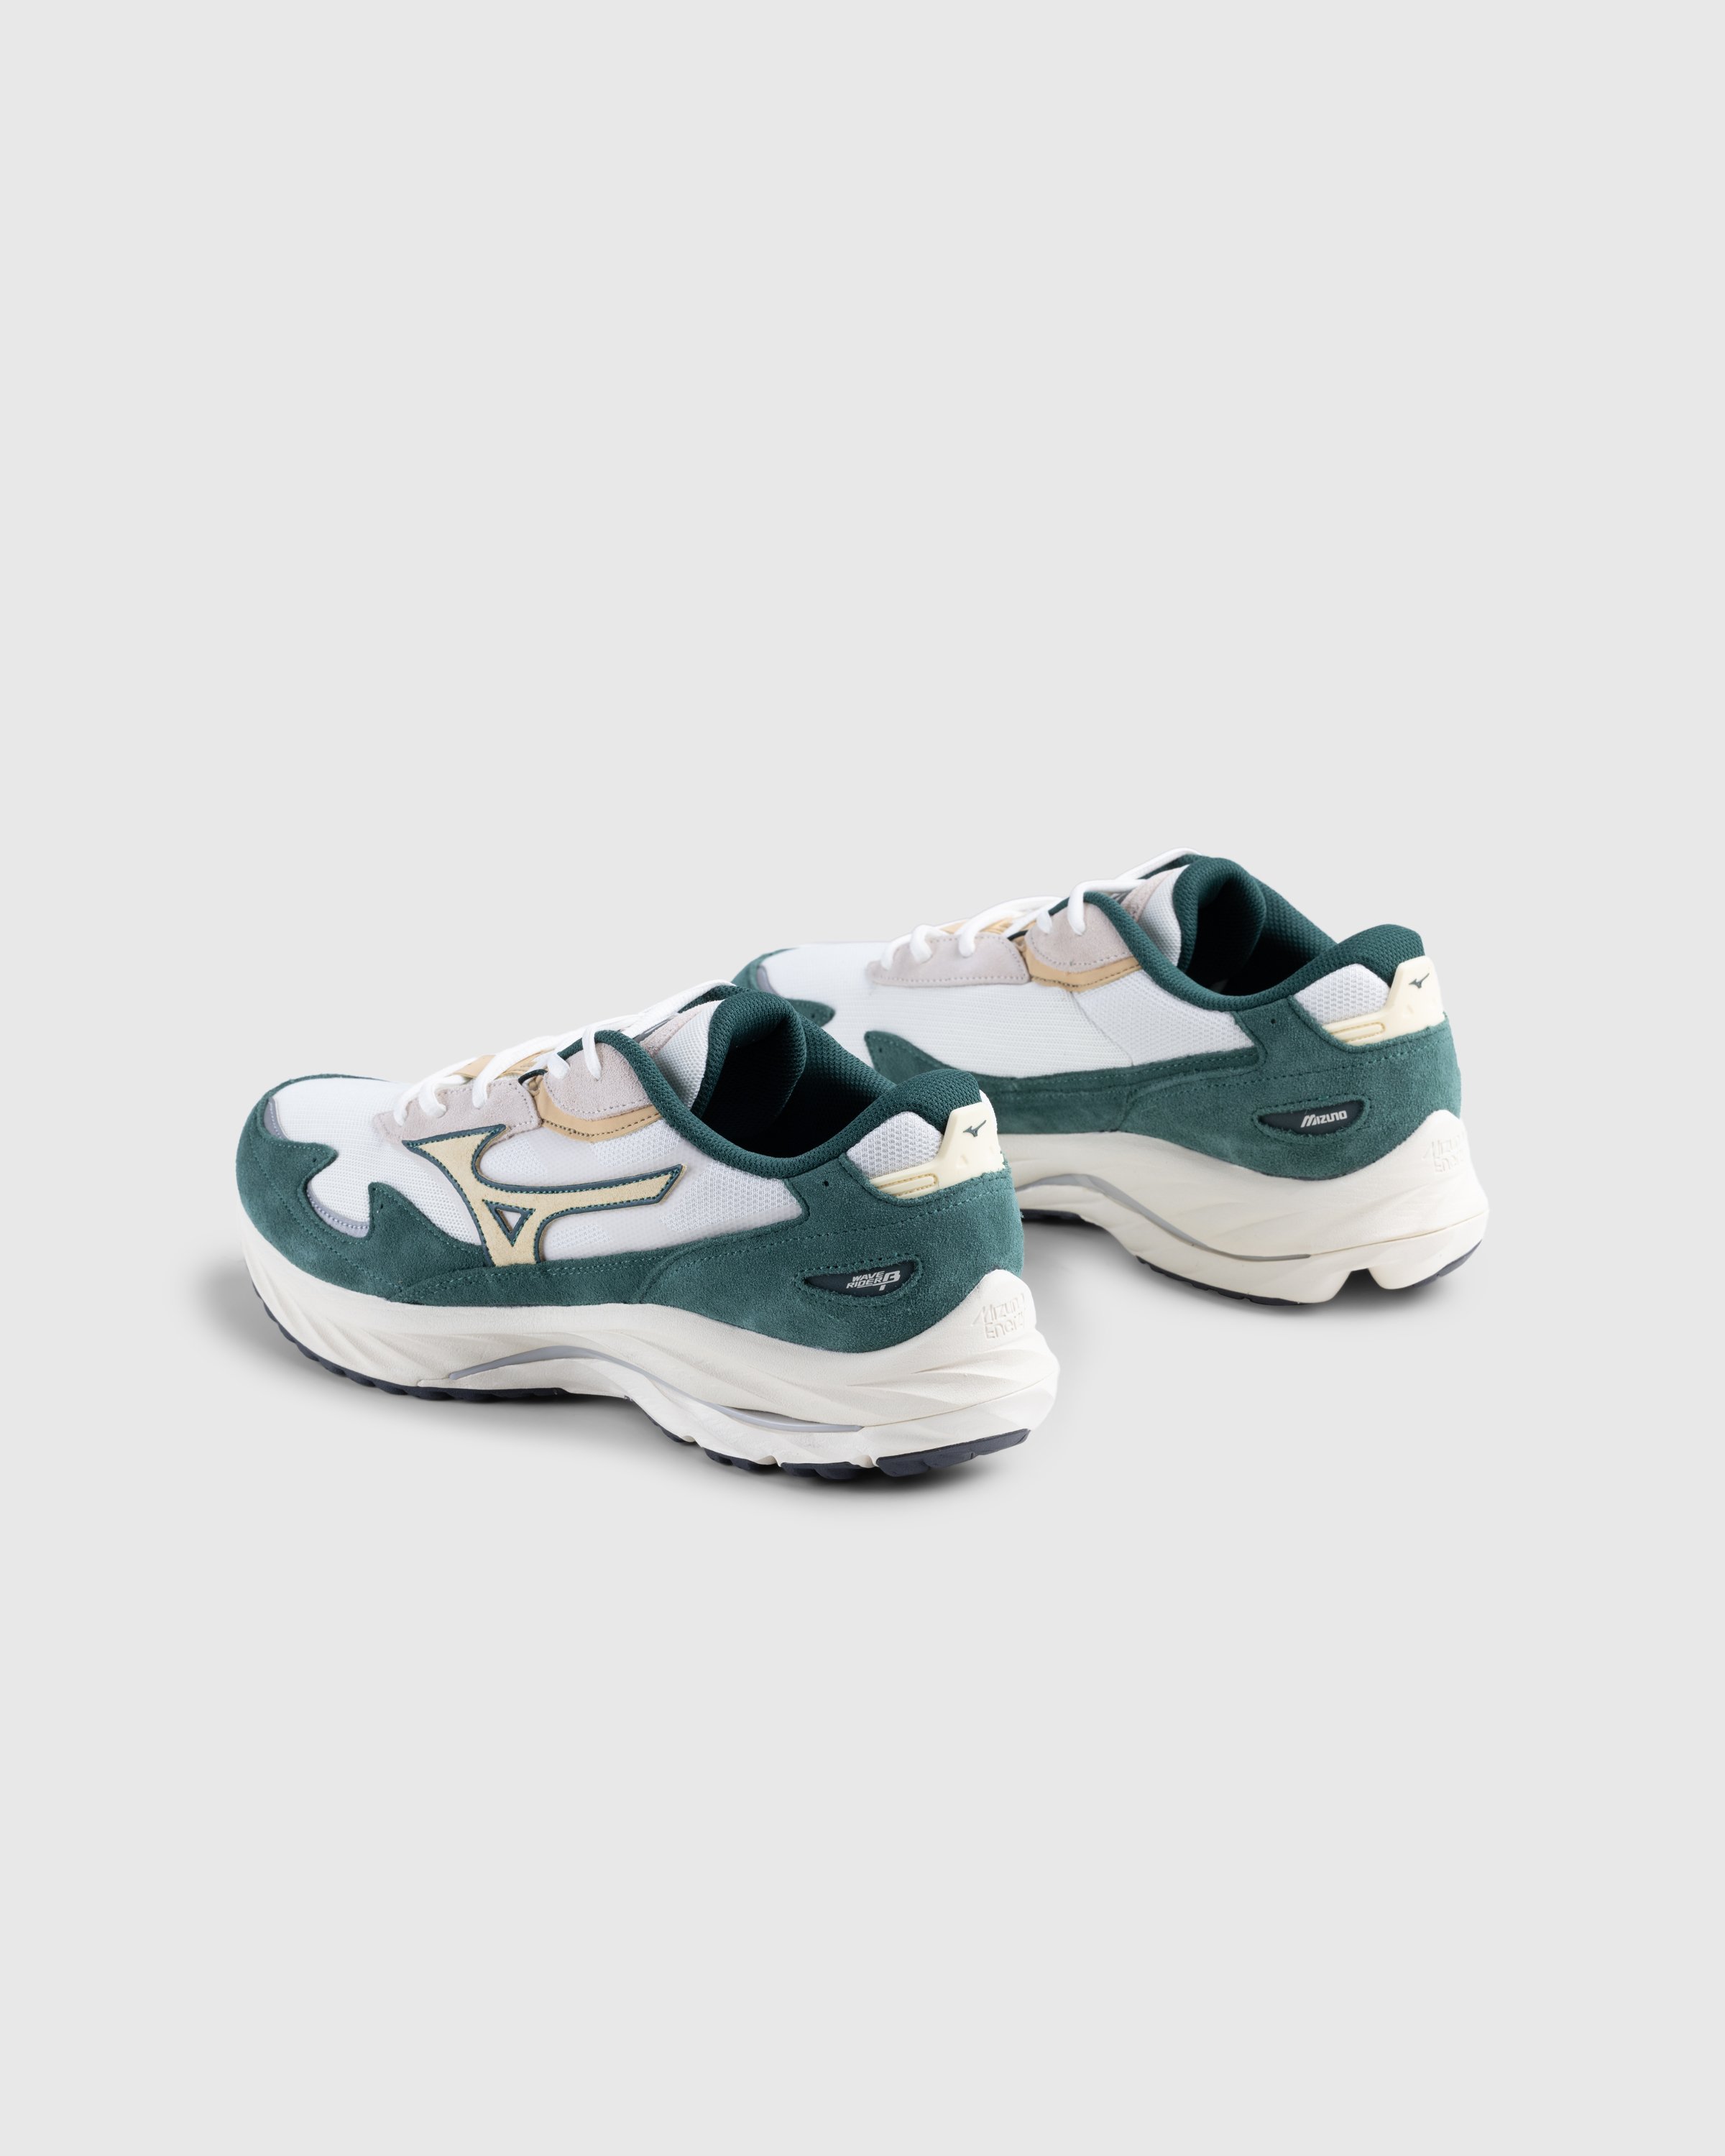 Mizuno - WAVE RIDER BETA(U) - Footwear - Colorway - Image 4